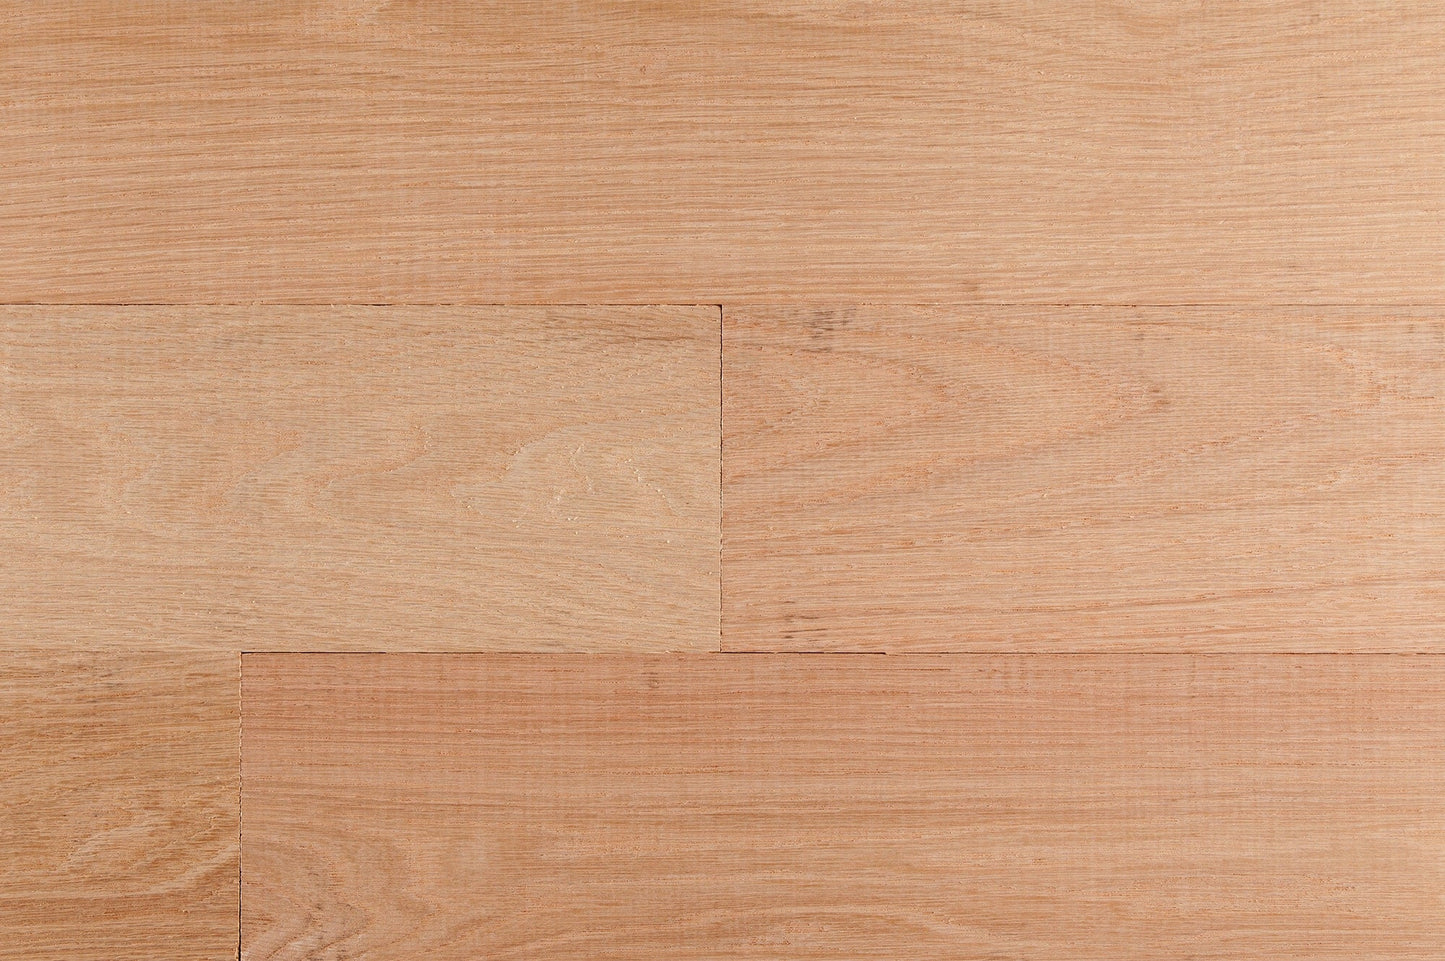 Hardwood - Unfinished Oak